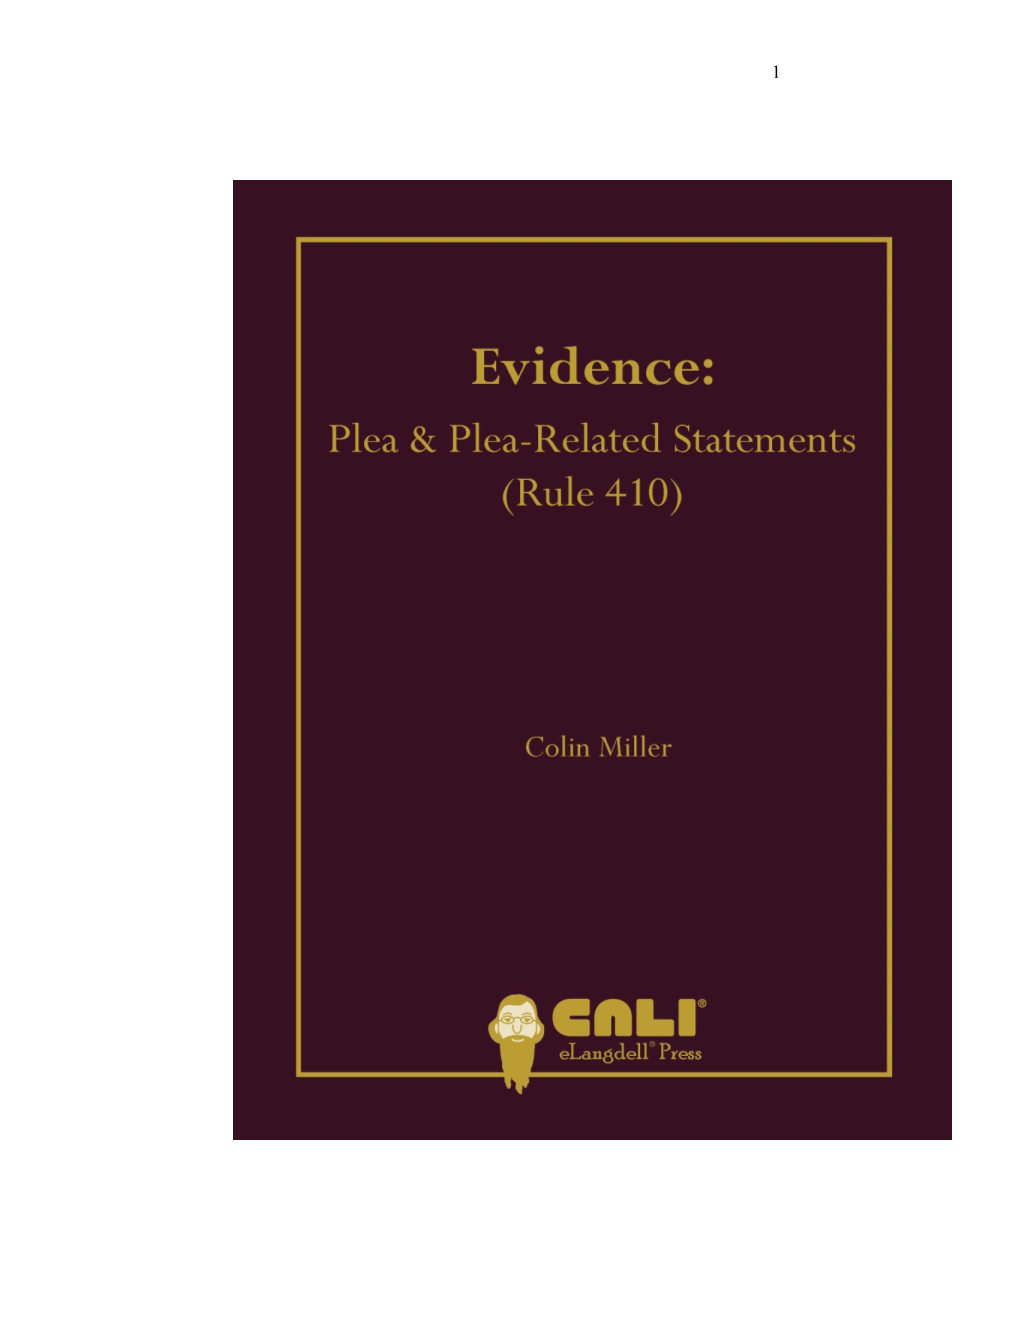 Plea and Plea-Related Statements